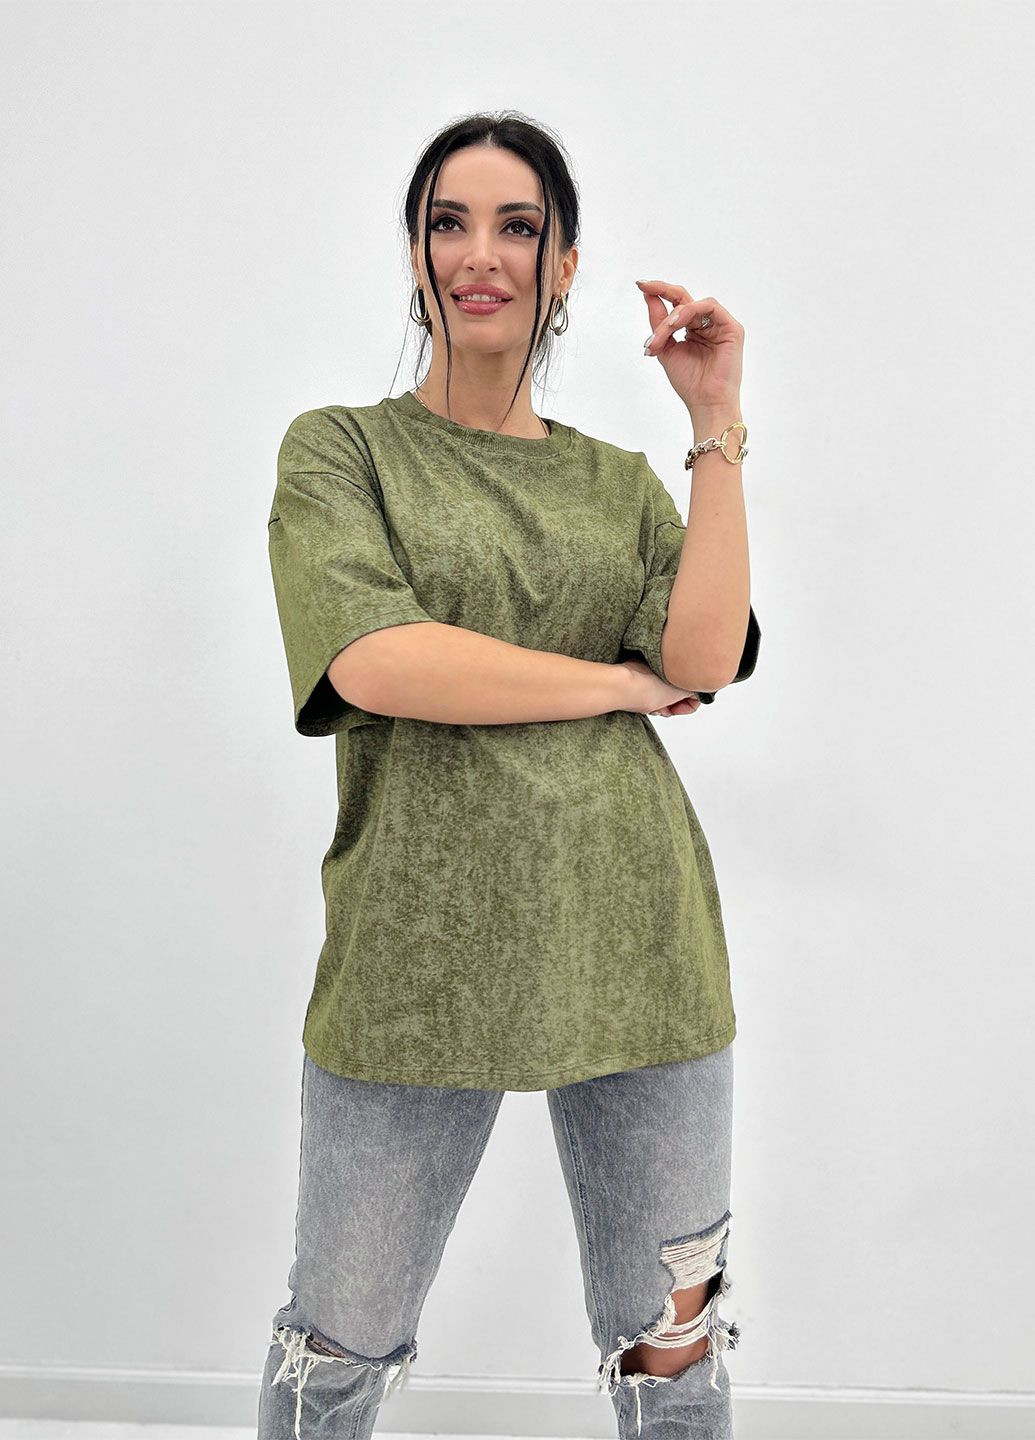 Хакі (оливкова) базова футболка тай-дай з коротким рукавом Fashion Girl Simple